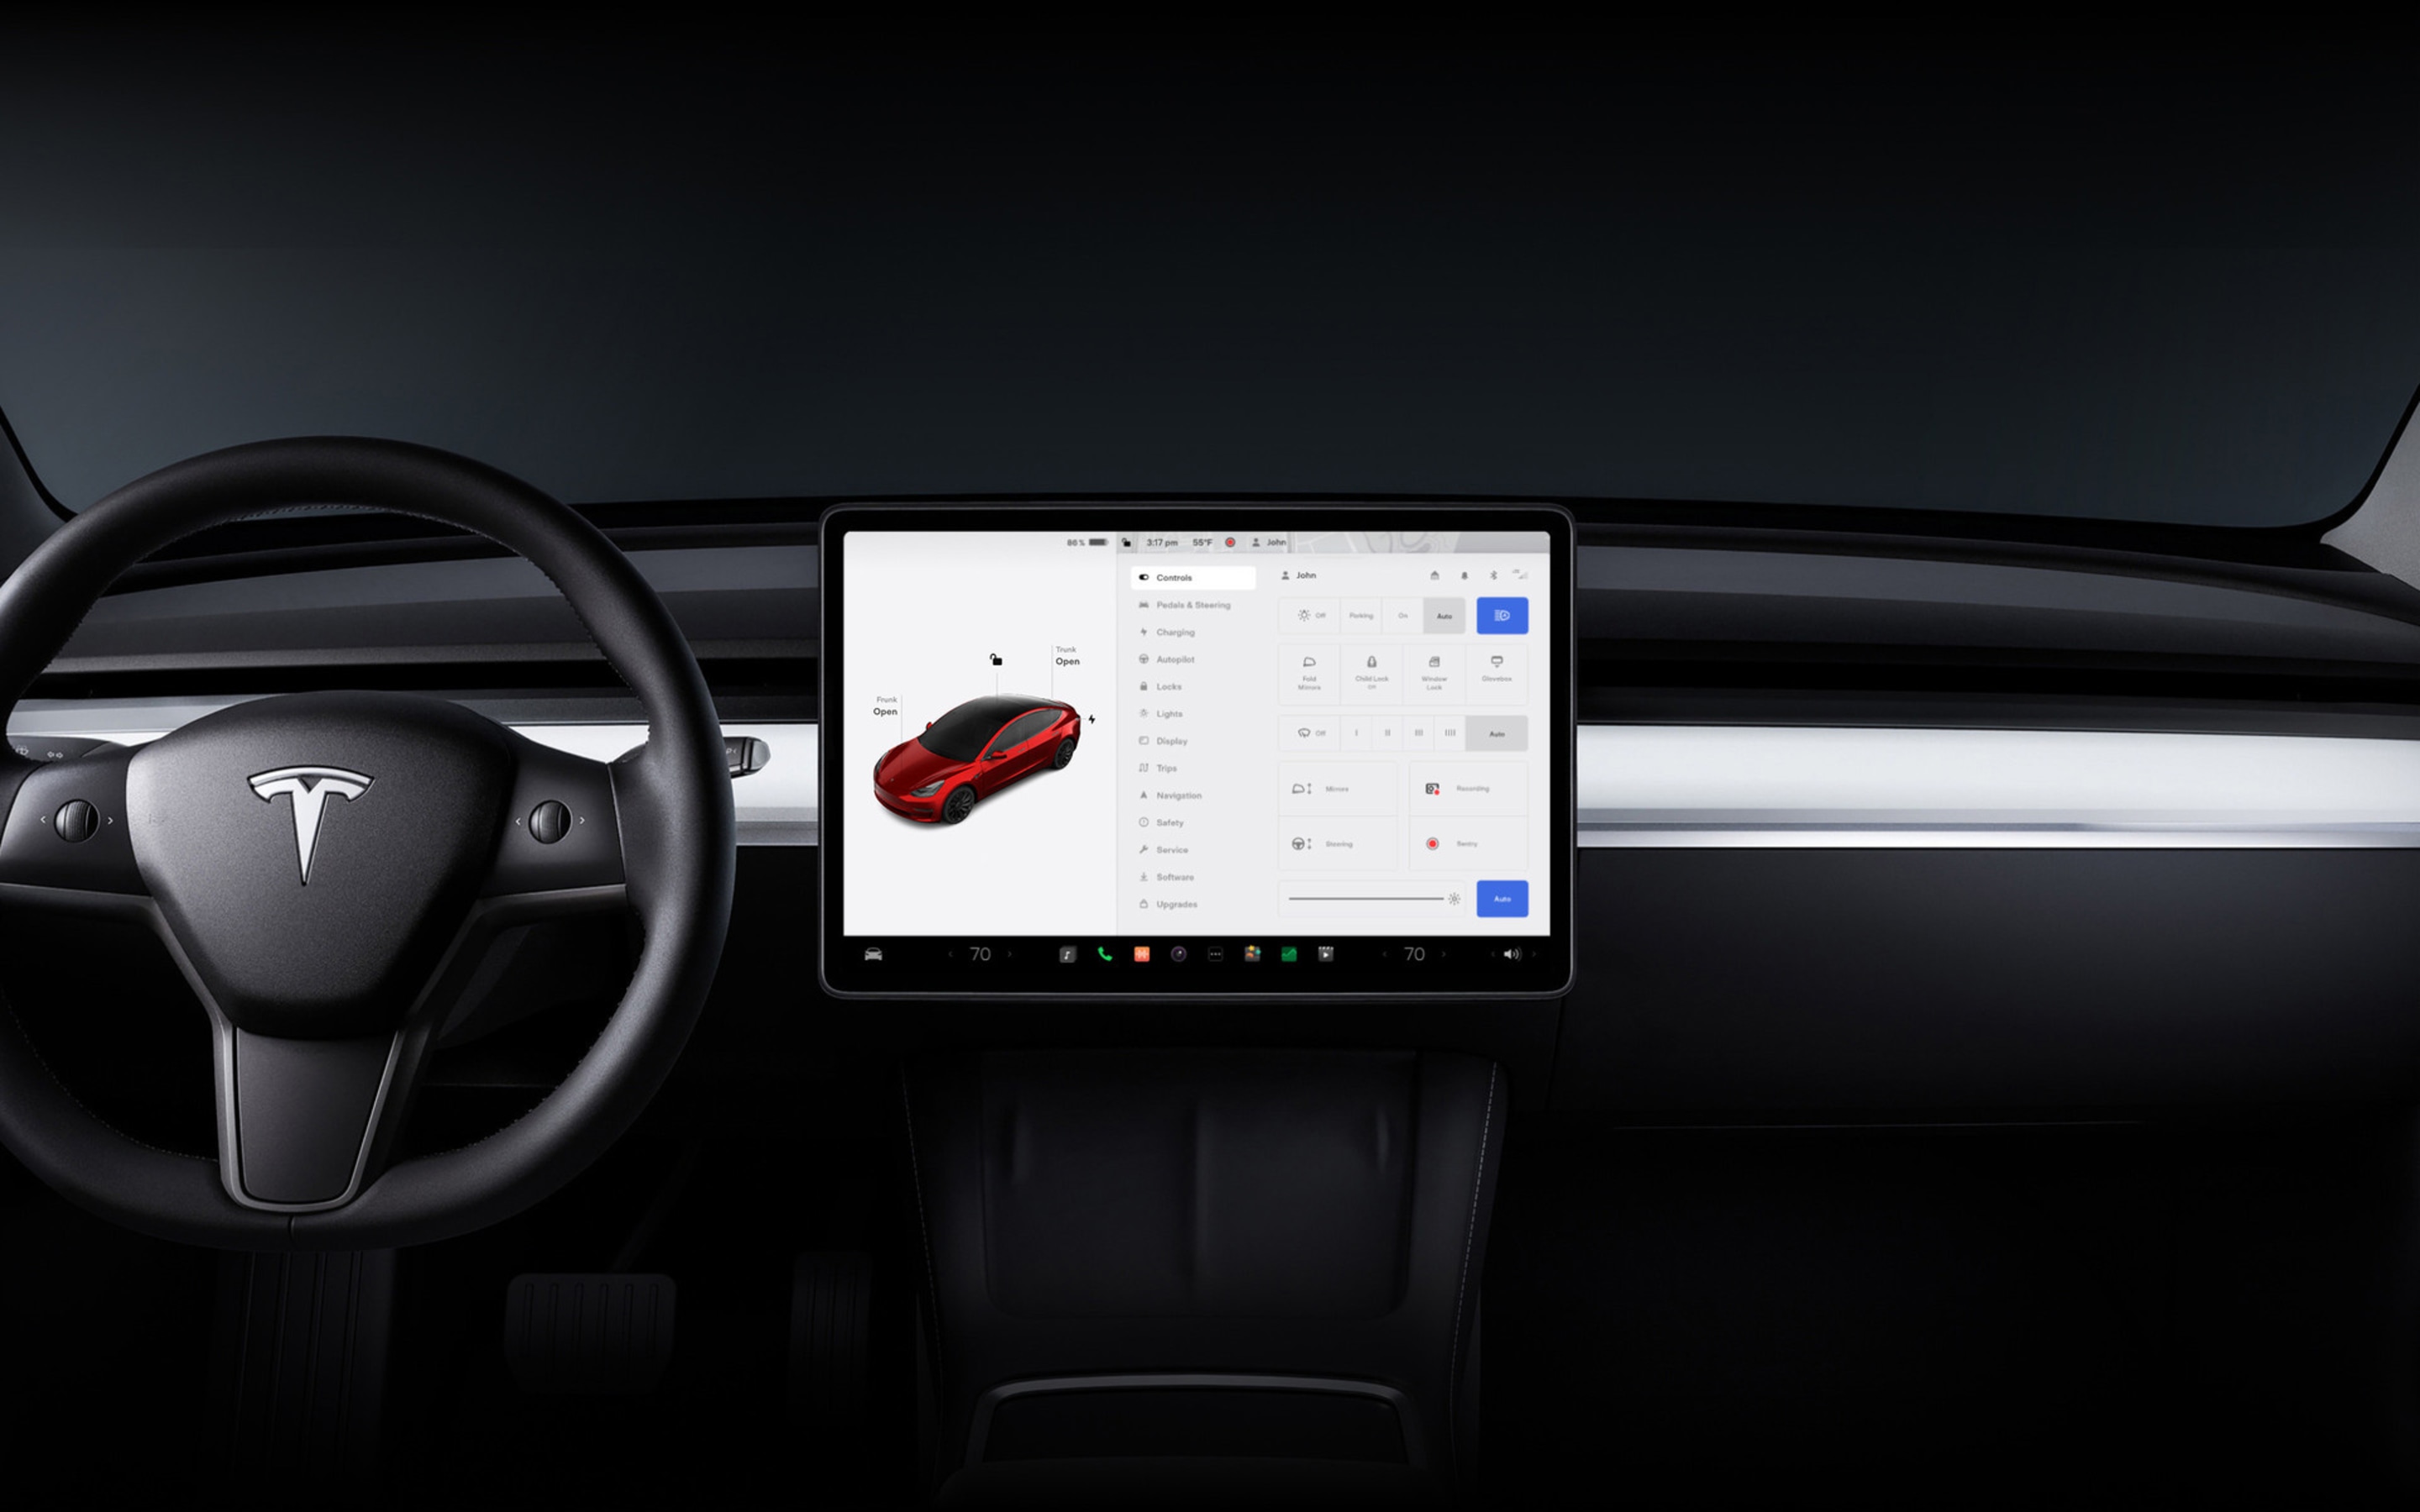 15" dotyková obrazovka ve voze Model 3 s ovládacími prvky vozidla